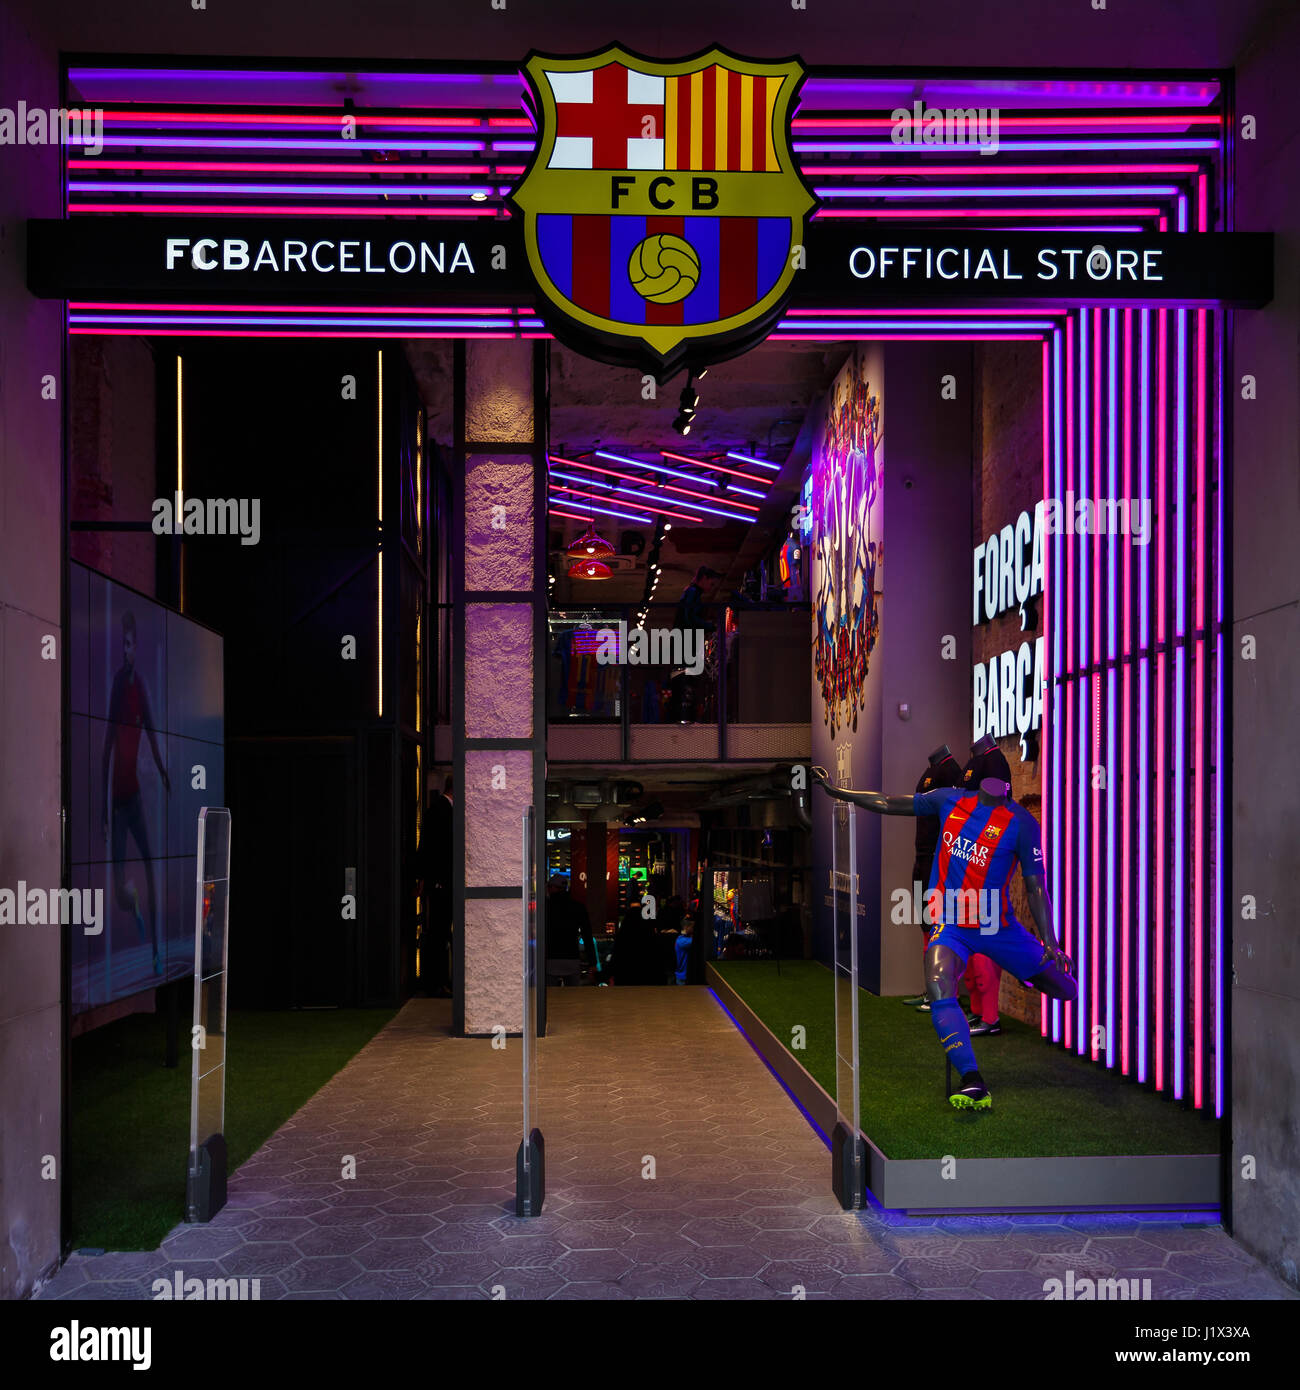 Barcelone, Espagne - 02 janvier 2017 : l'entrée du magasin officiel Football Club Barcelone, situé sur le Passeig de Gracia Banque D'Images